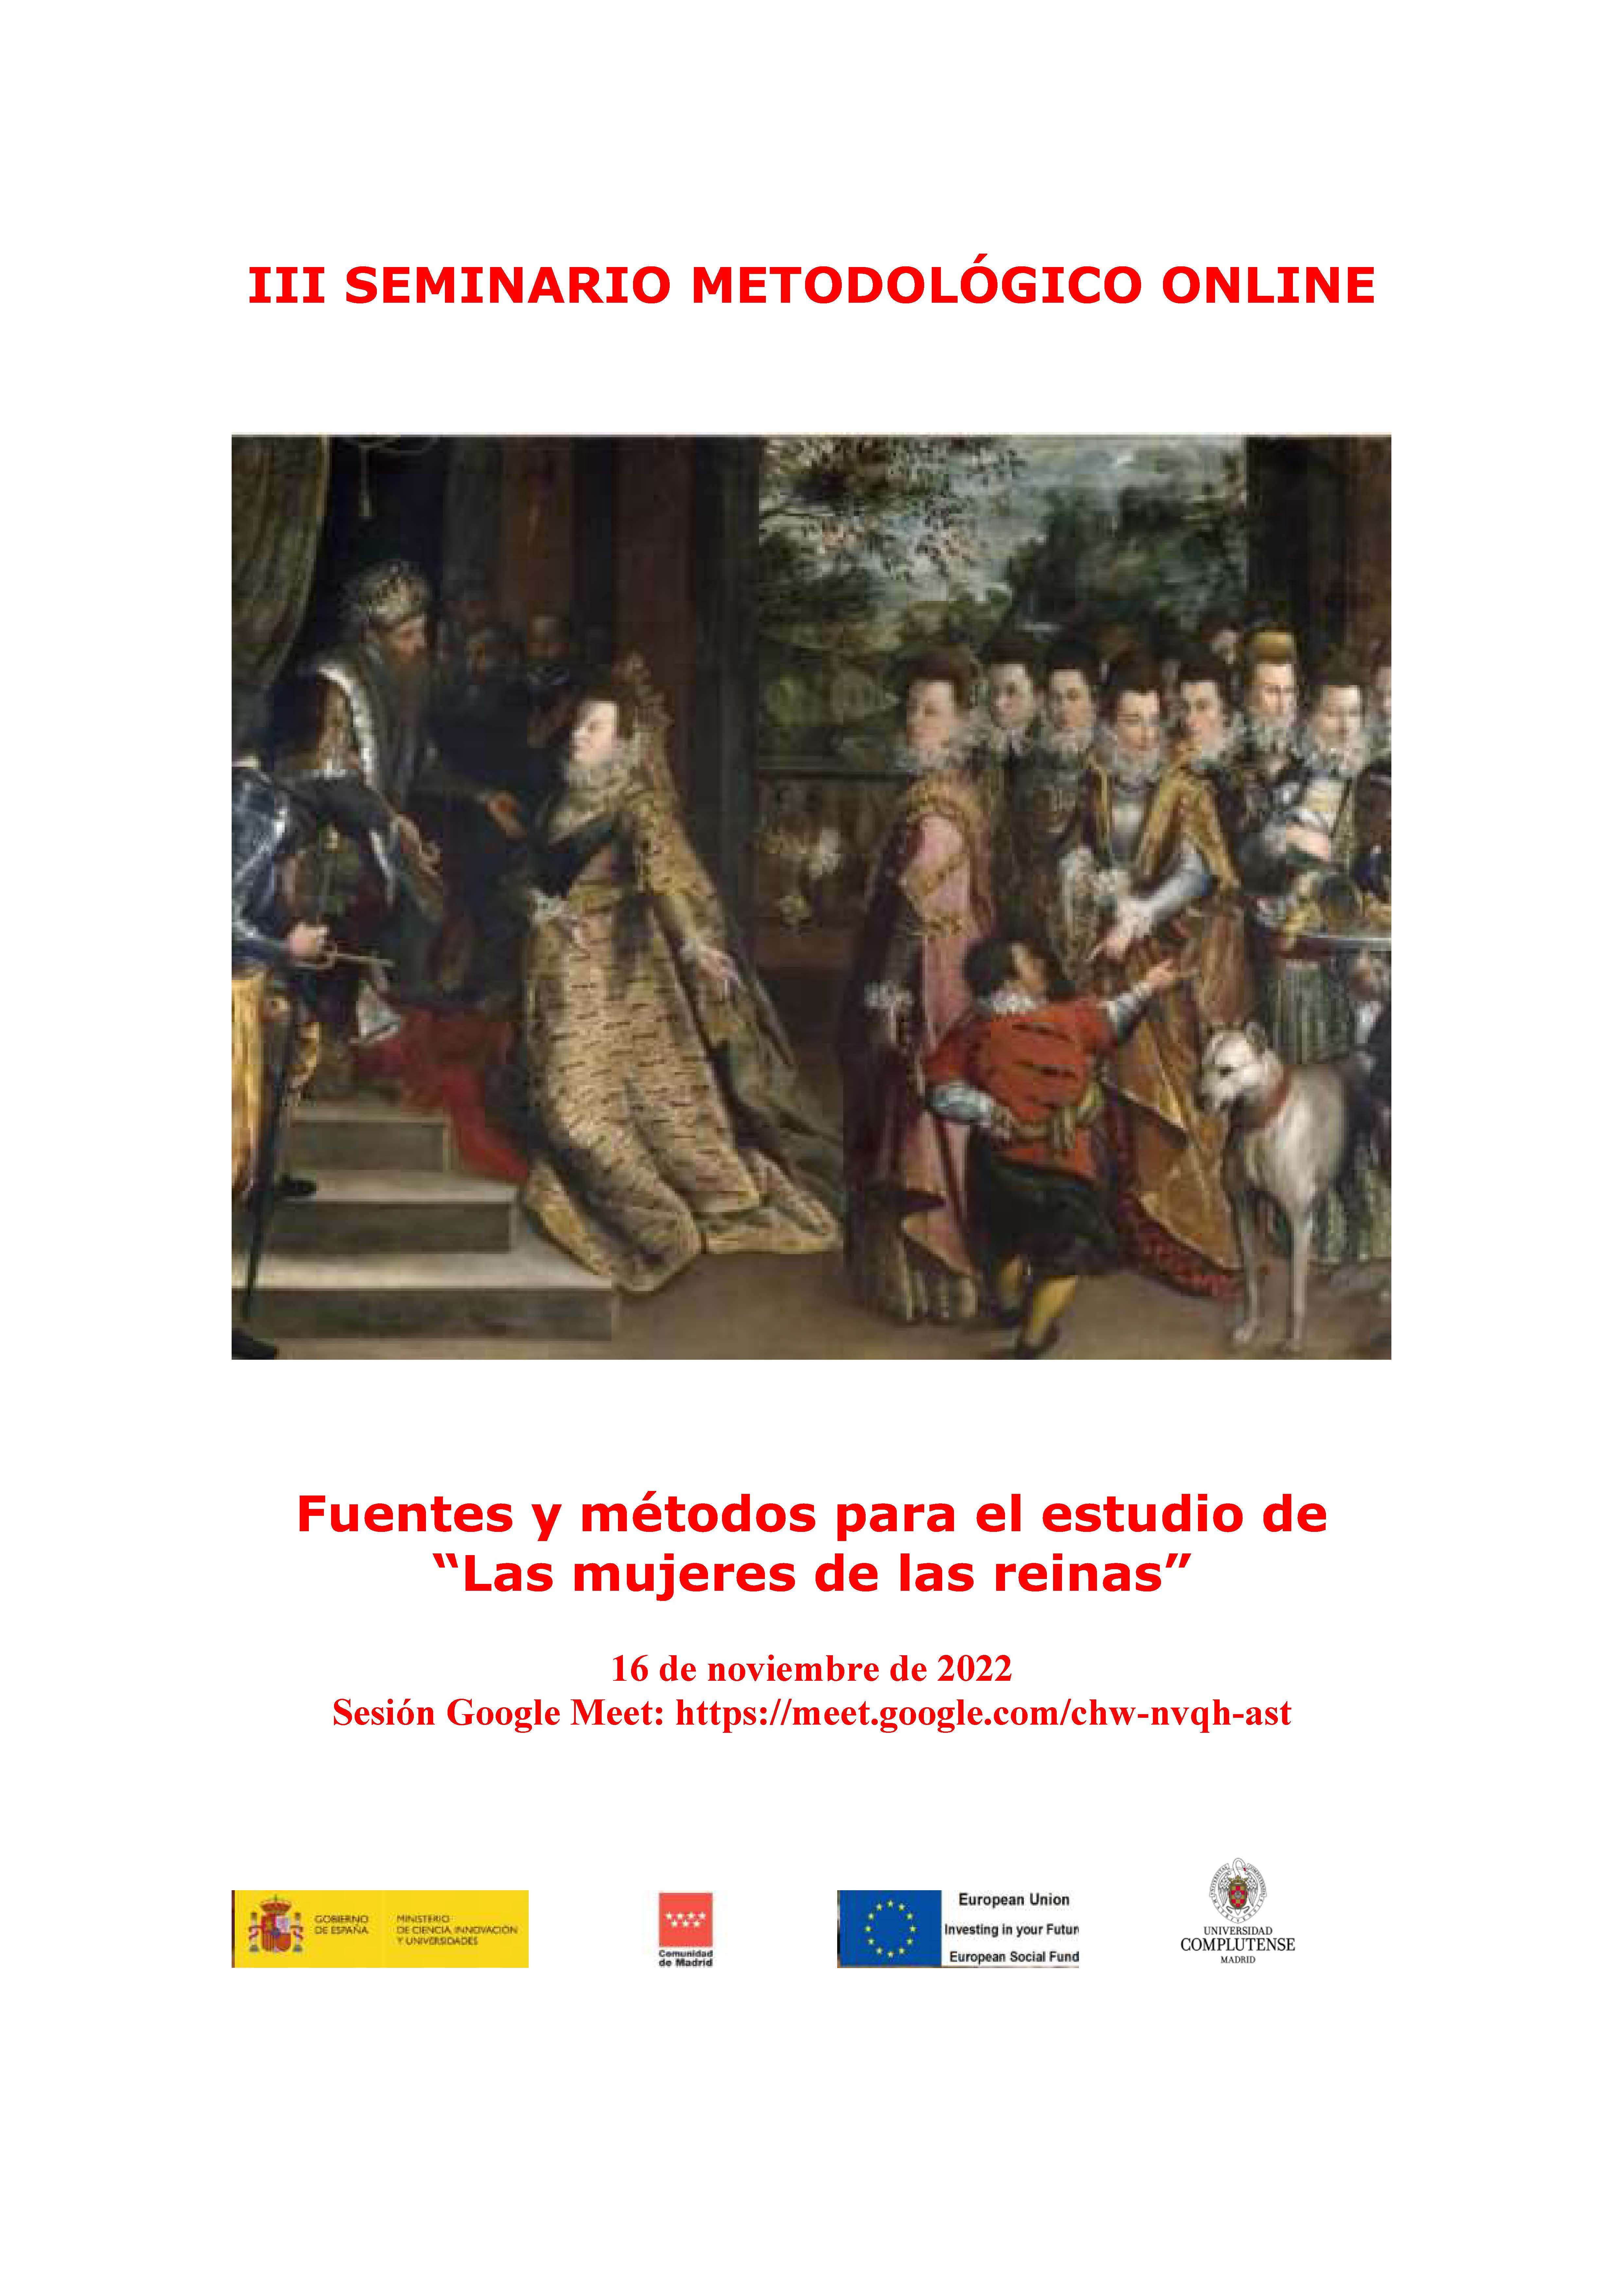 III Seminario Metodológico online en Historia de las mujeres - 16.11.2022